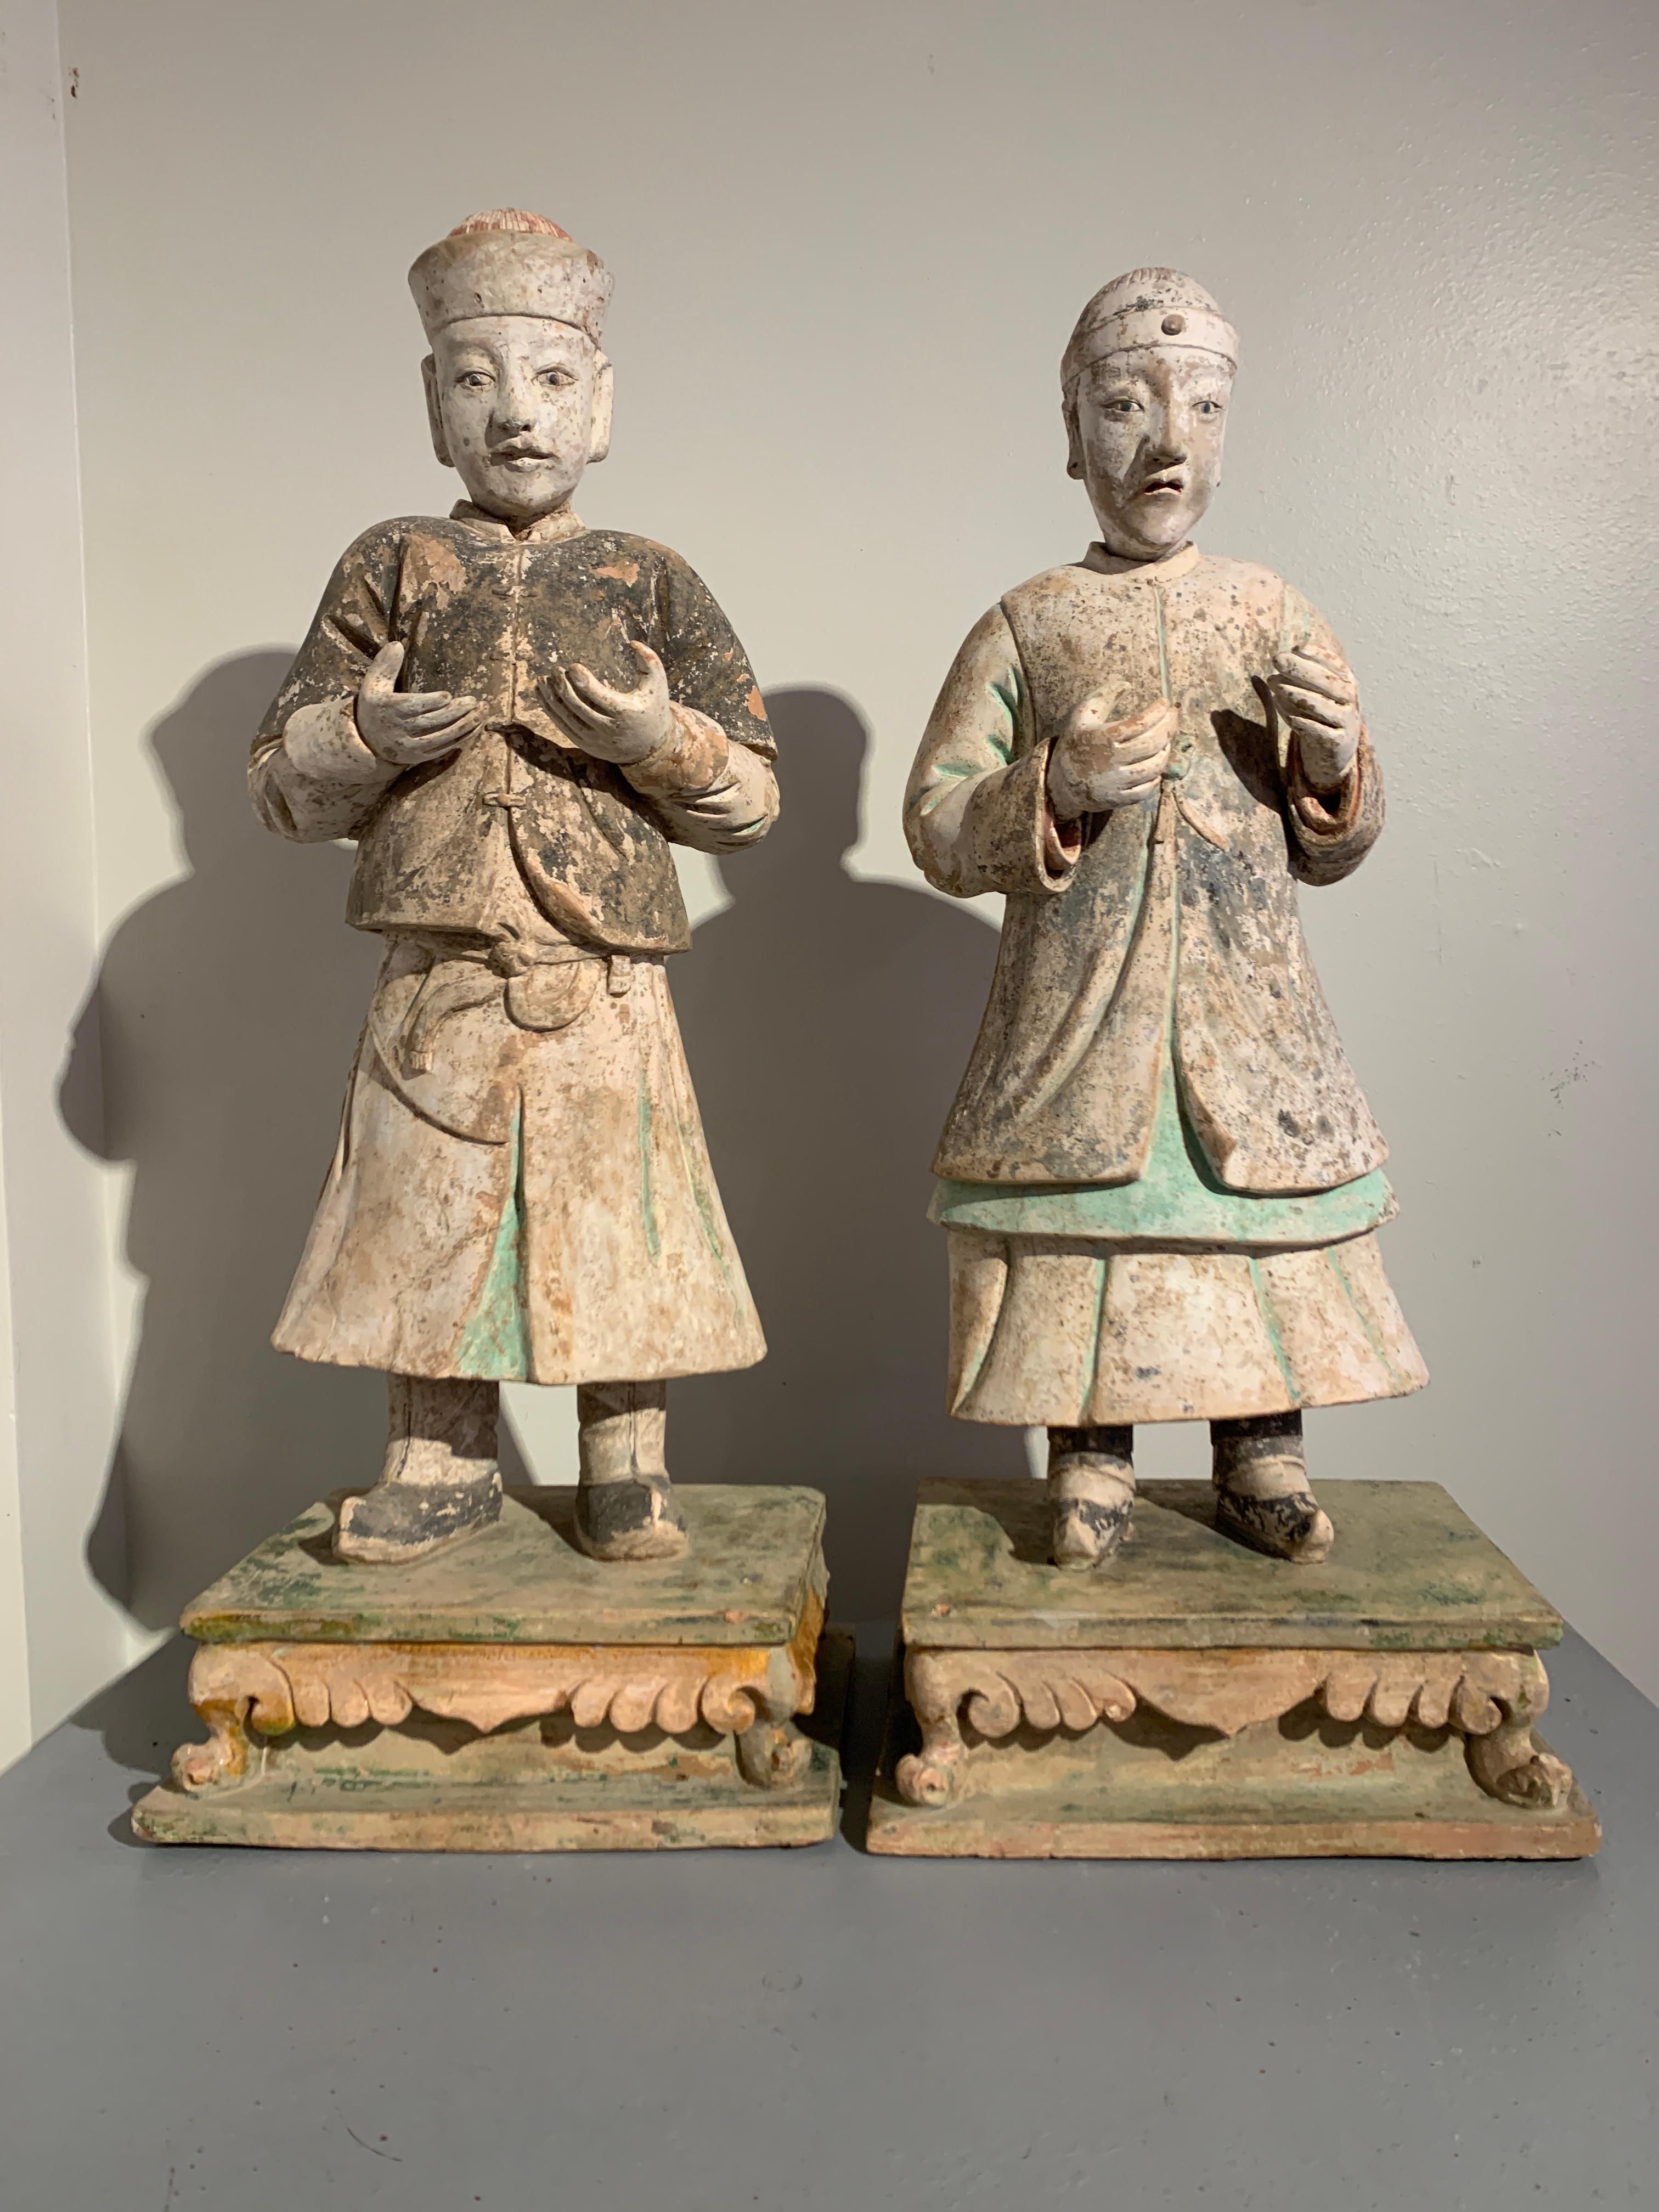 Paire étonnante de grandes figurines en poterie vernie et peinte, dynastie Ming (1368 à 1644), vers le XVIe siècle, Chine.

Les figures impressionnantes et modelées avec réalisme sont toutes représentées debout sur un piédestal glacé sancai (trois